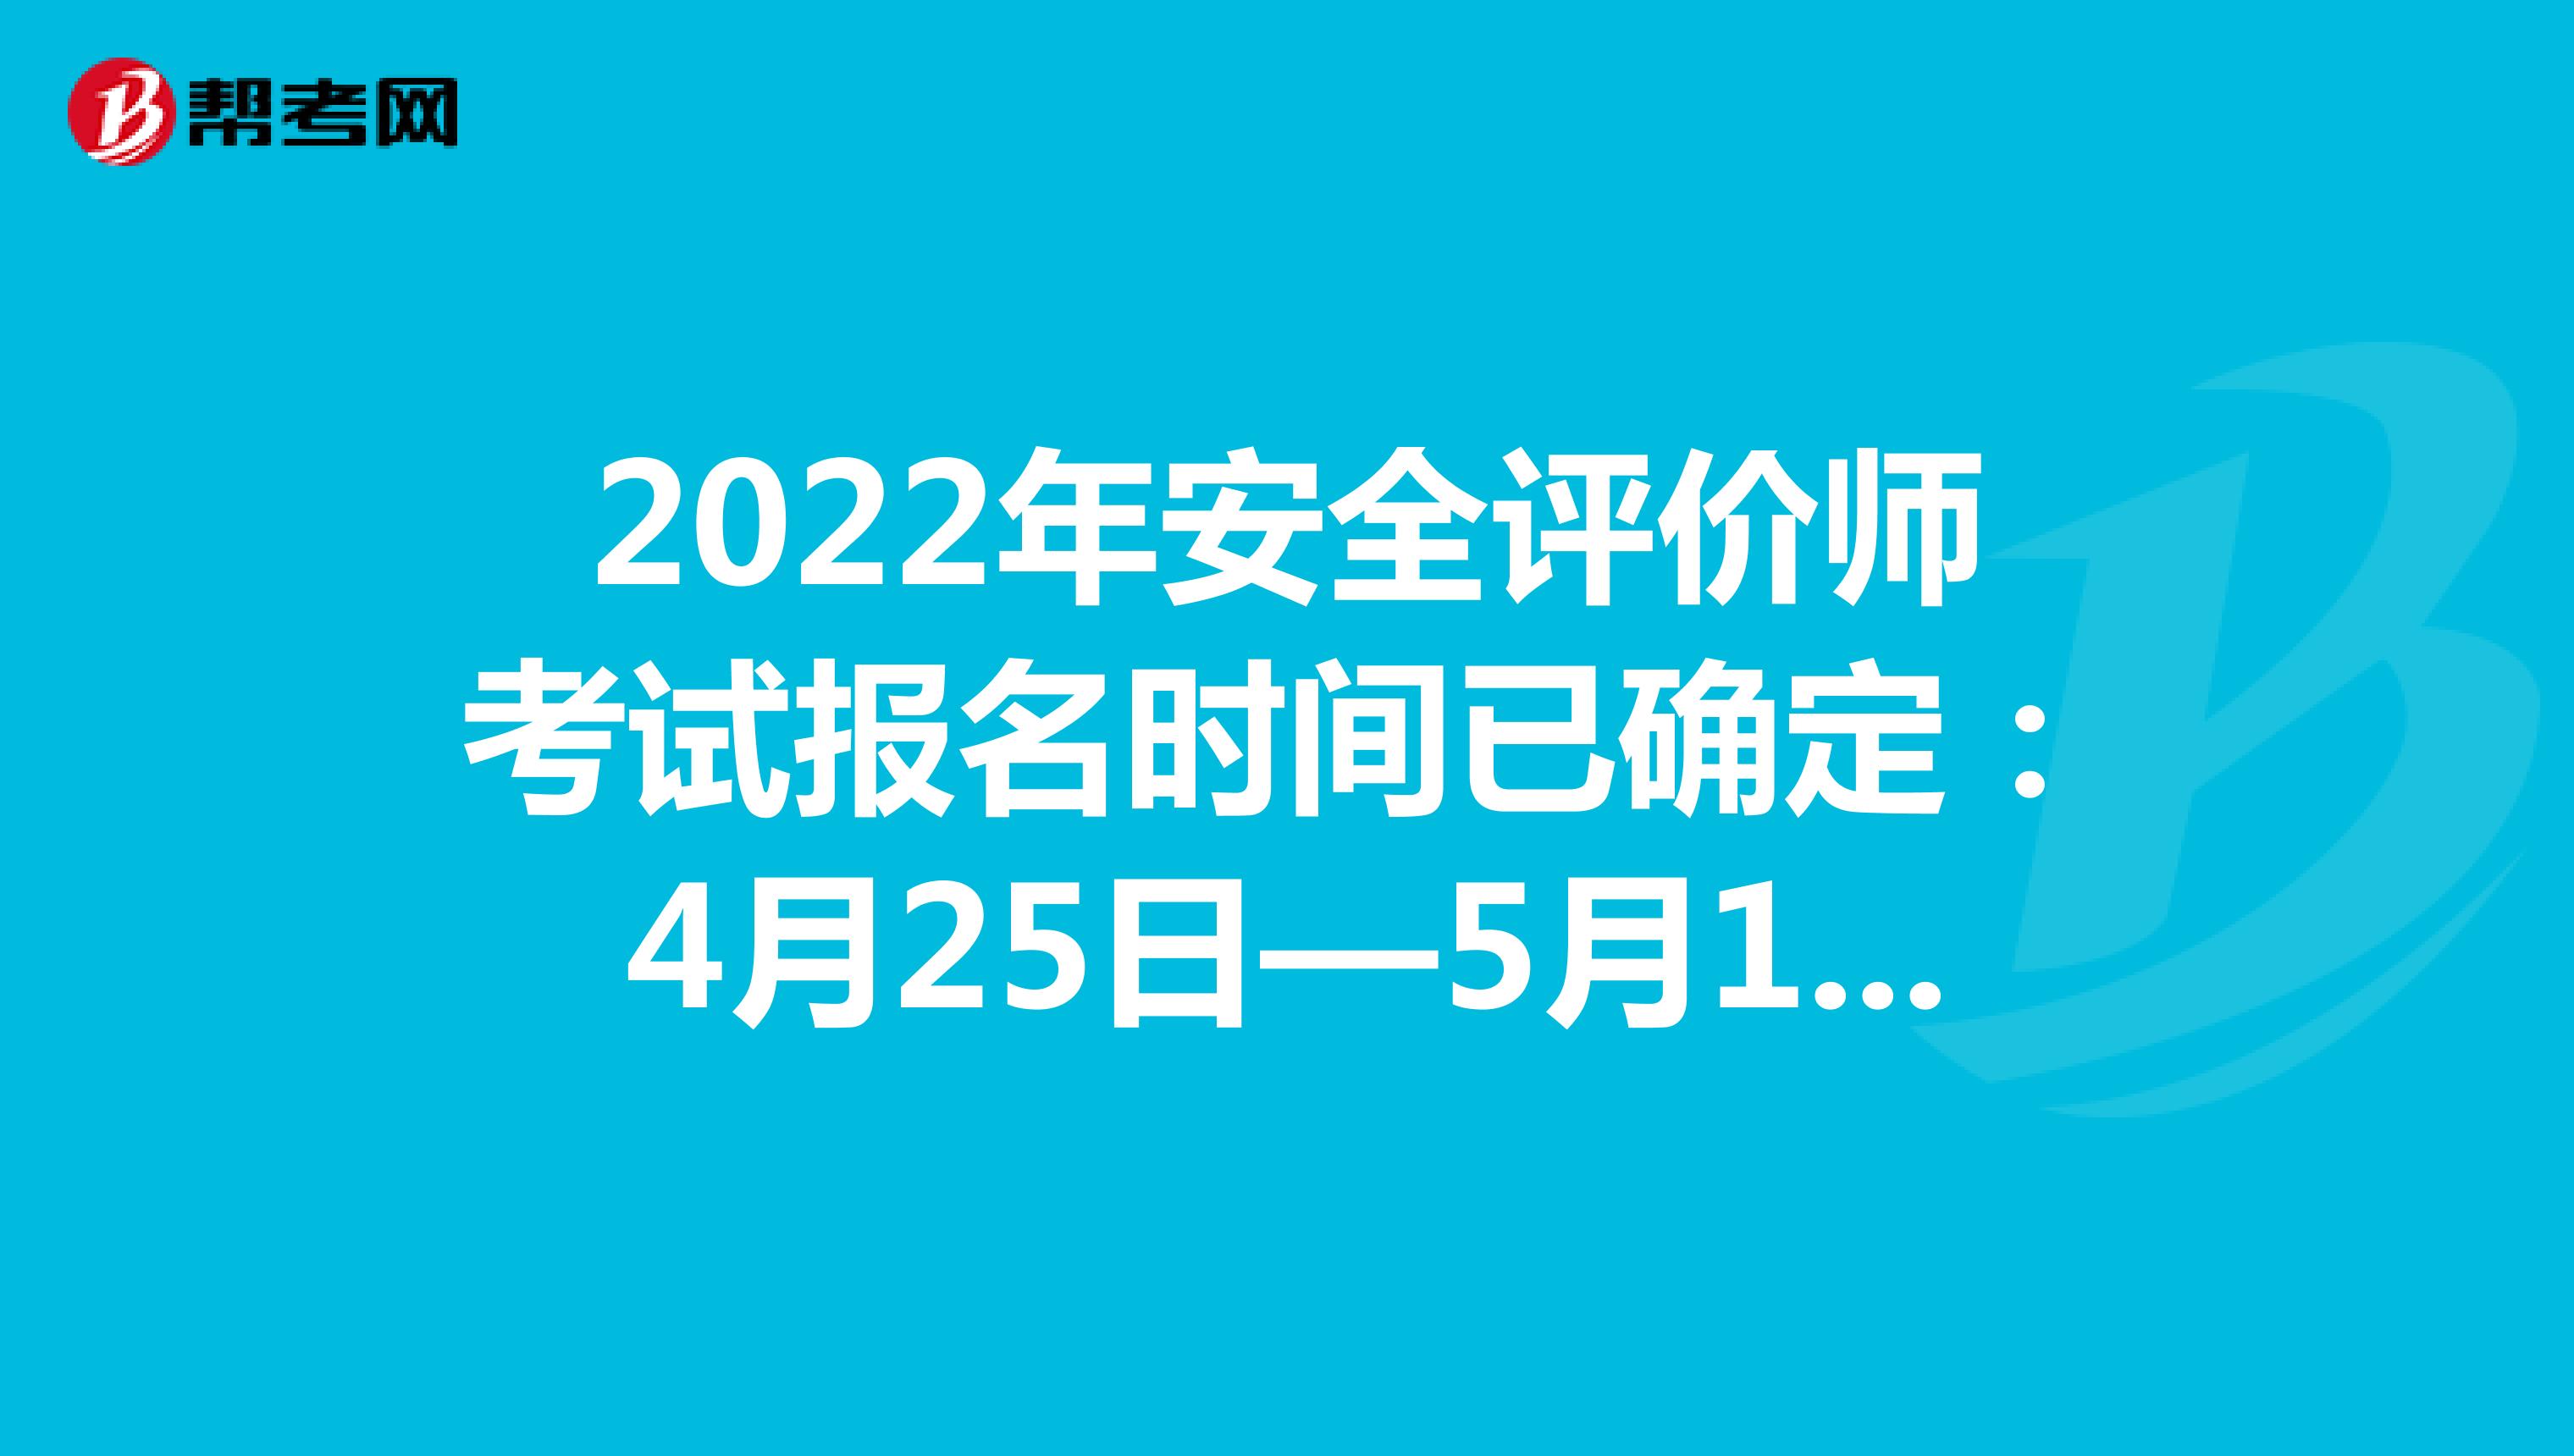 2022年安全评价师考试报名时间已确定：4月25日—5月12日